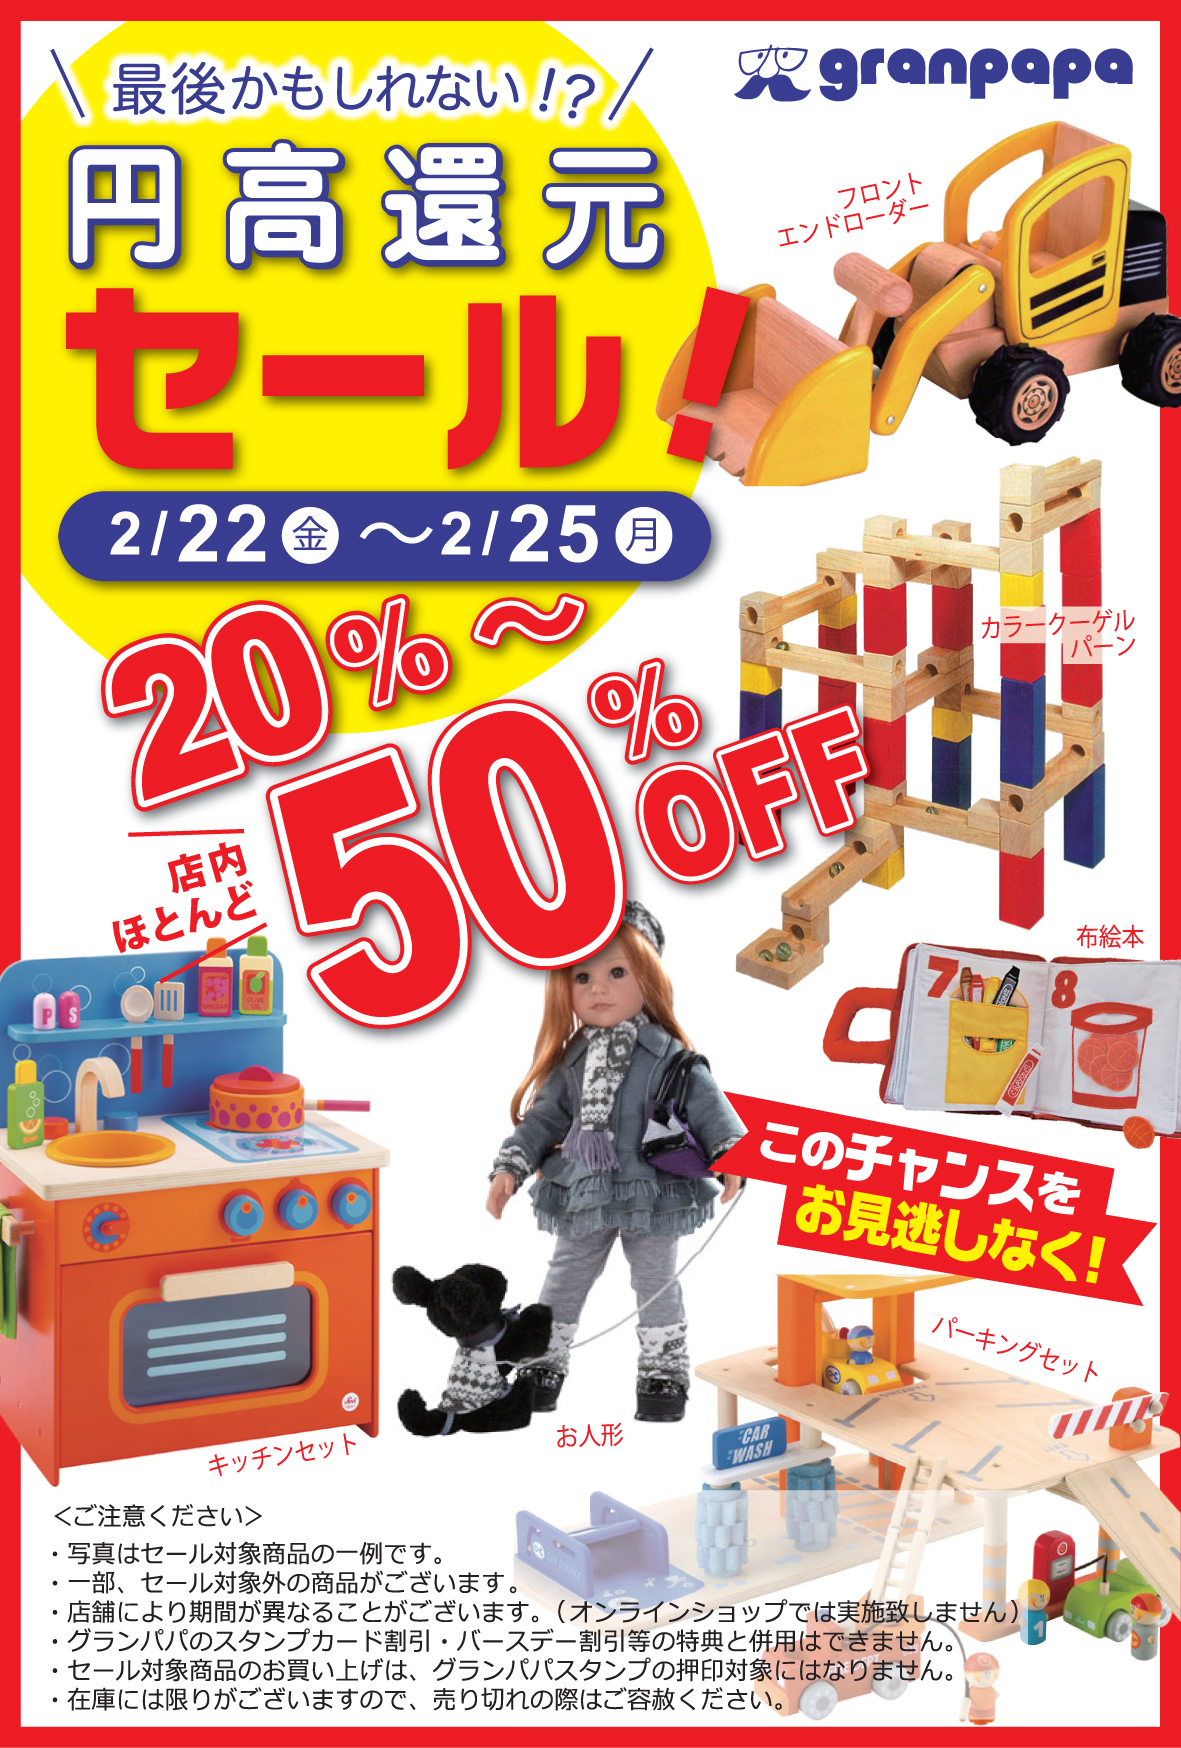 【円高還元セール】のお知らせ！！ - おもちゃのグランパパ BLOG ～無料ラッピング。ワクワクをお届け中♪～